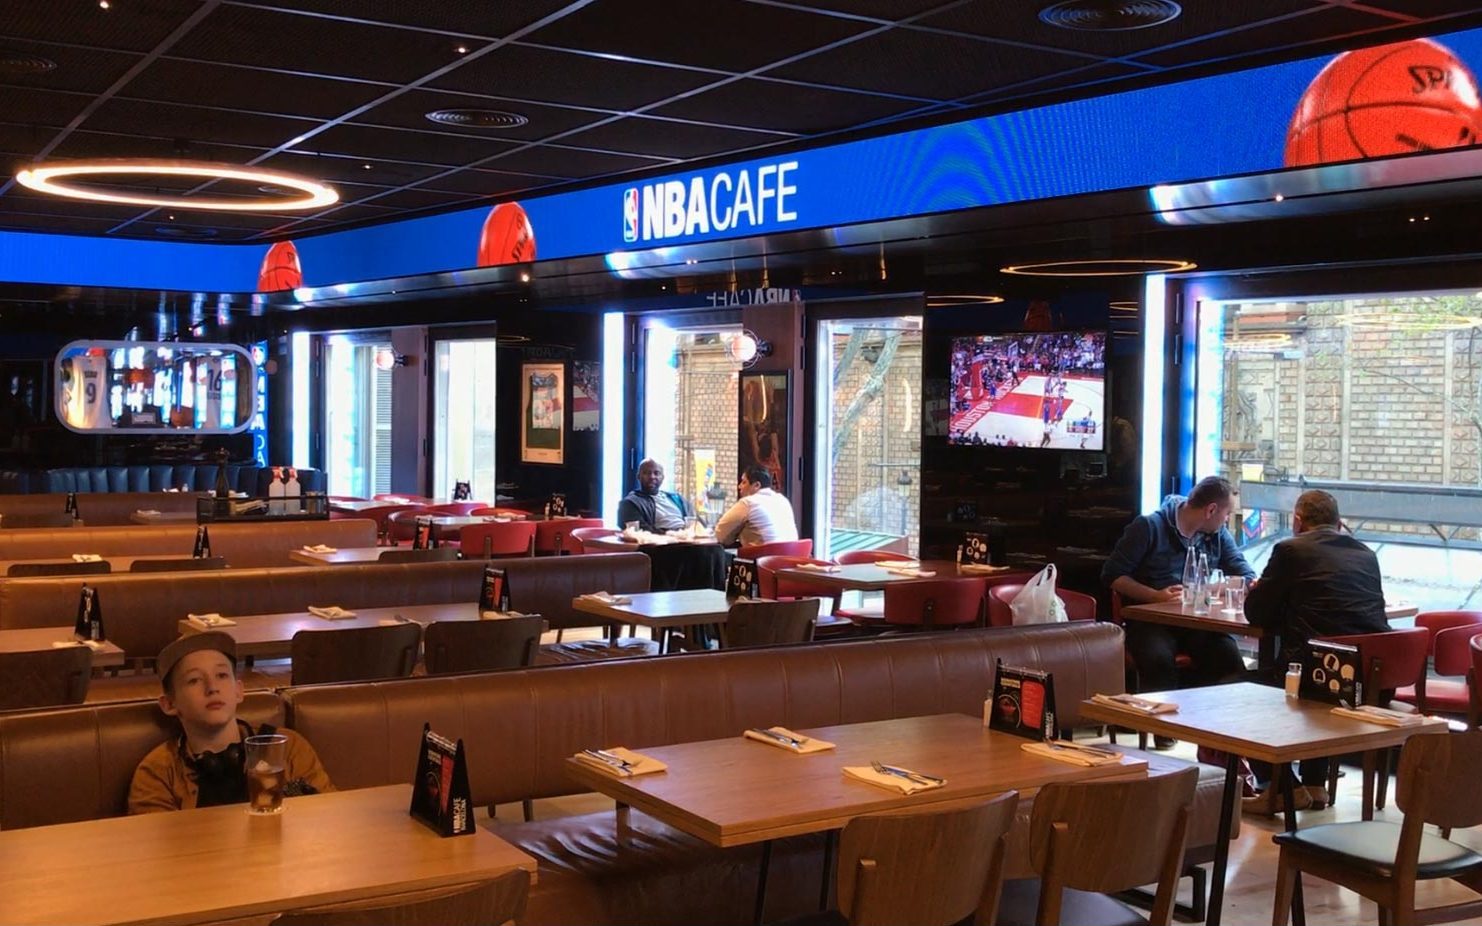 Pantalla Led - NBA Café Barcelona